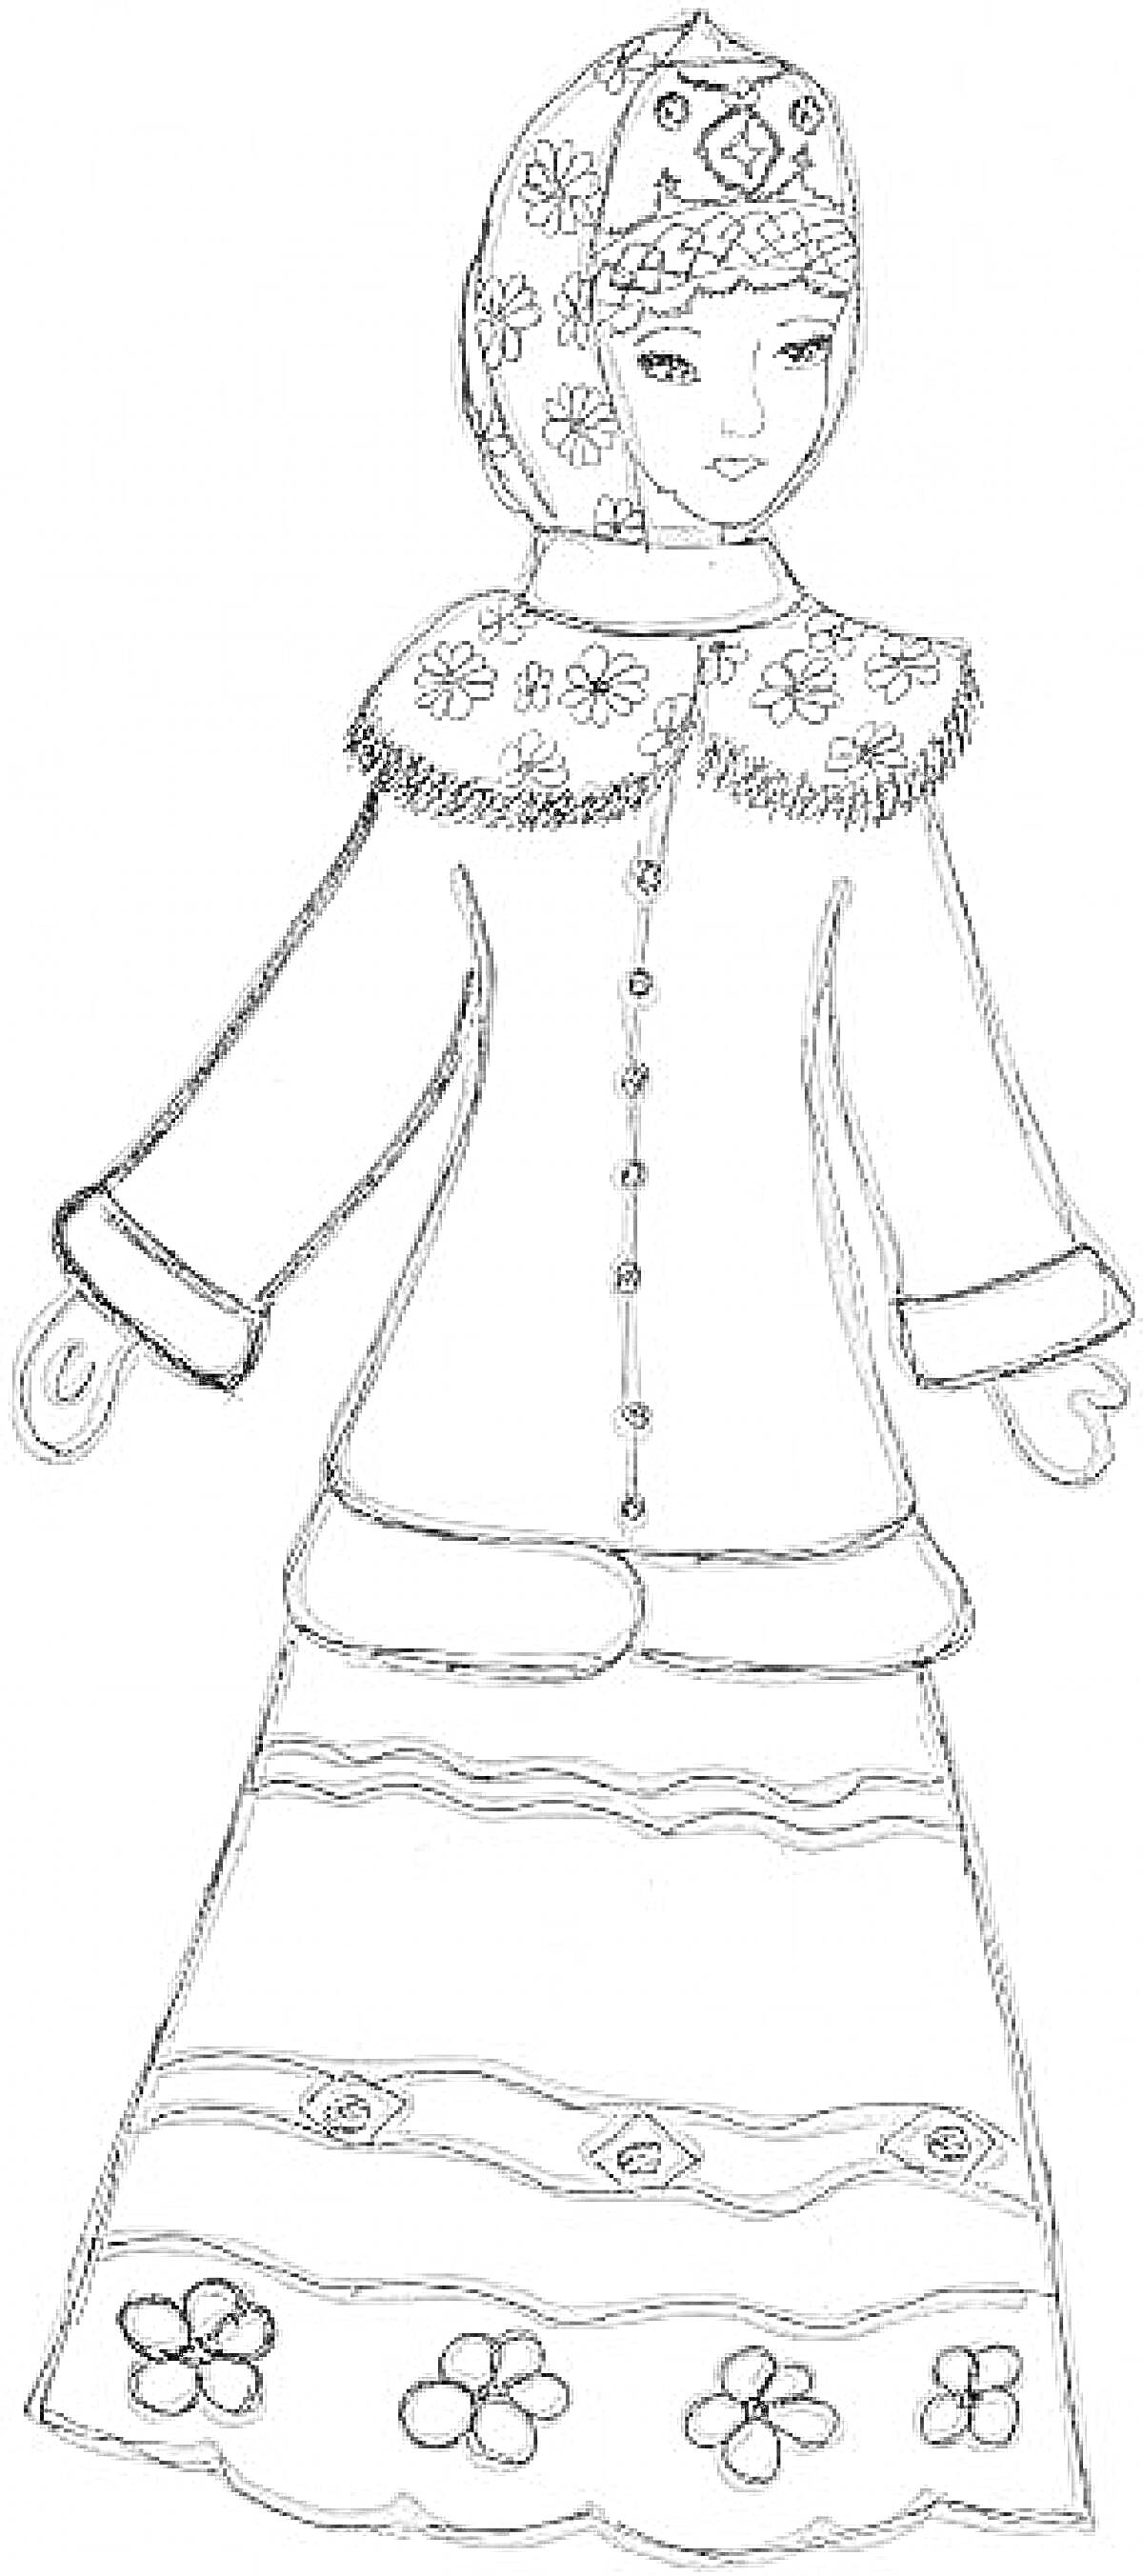 Раскраска Русский народный костюм с кокошником, косовороткой, и длинной юбкой с цветочным орнаментом